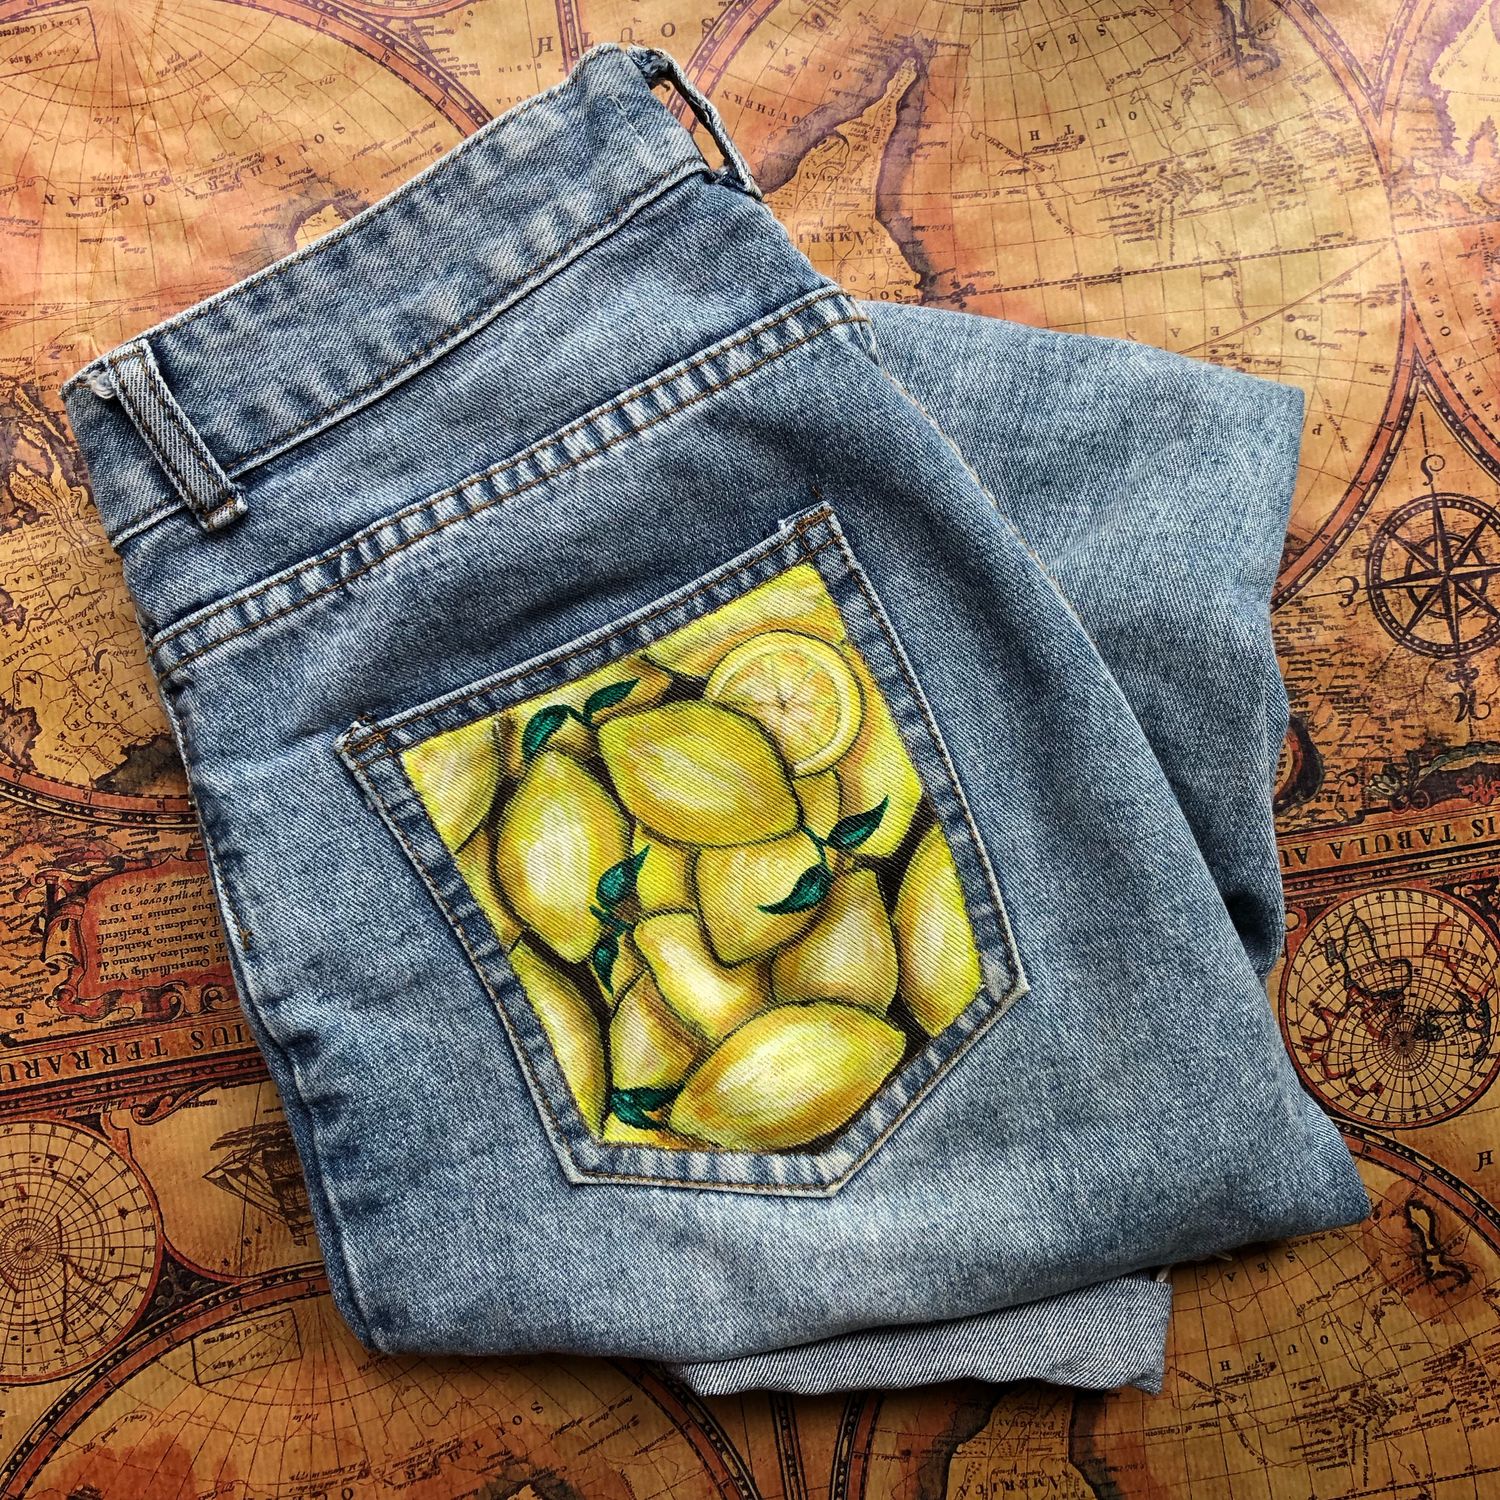 Карман джинсов рисунок. Карманы джинсов. Джинсы с карманами. Разрисованные джинсы. Роспись на кармане джинс.